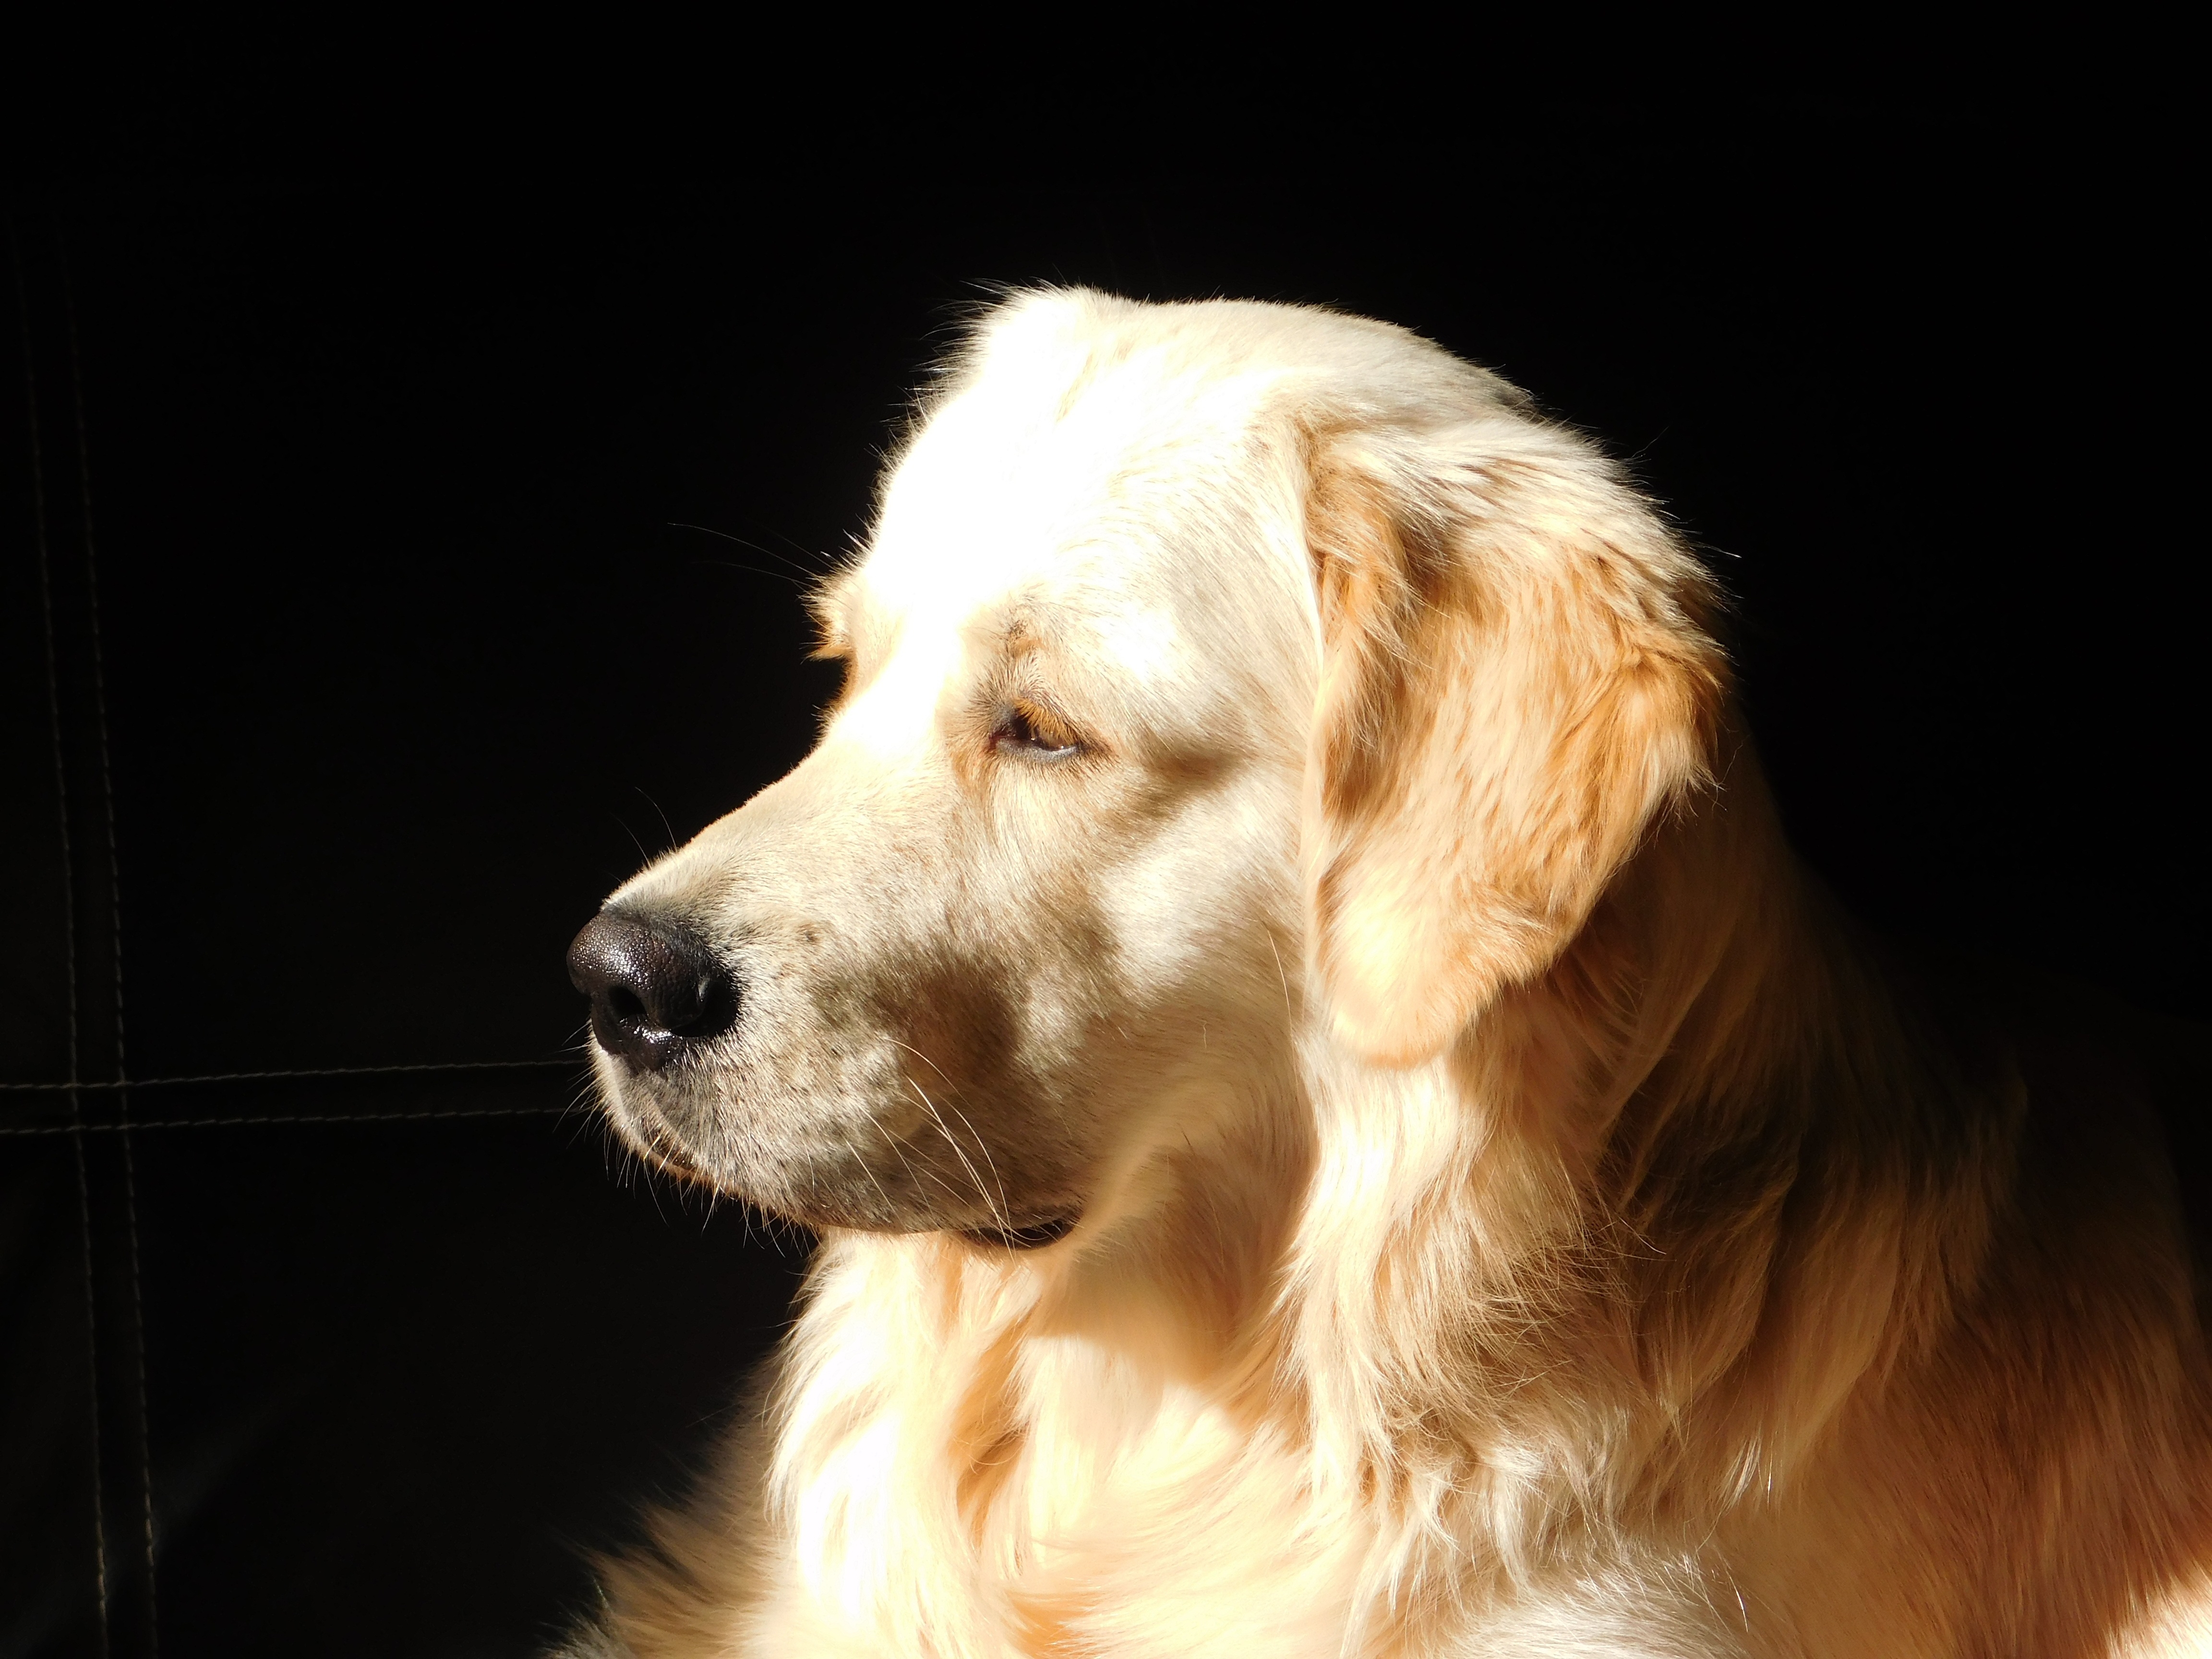 Фото обои золотой ретривер, щенок, вид в профиль, собаки - бесплатные картинки на Fonwall